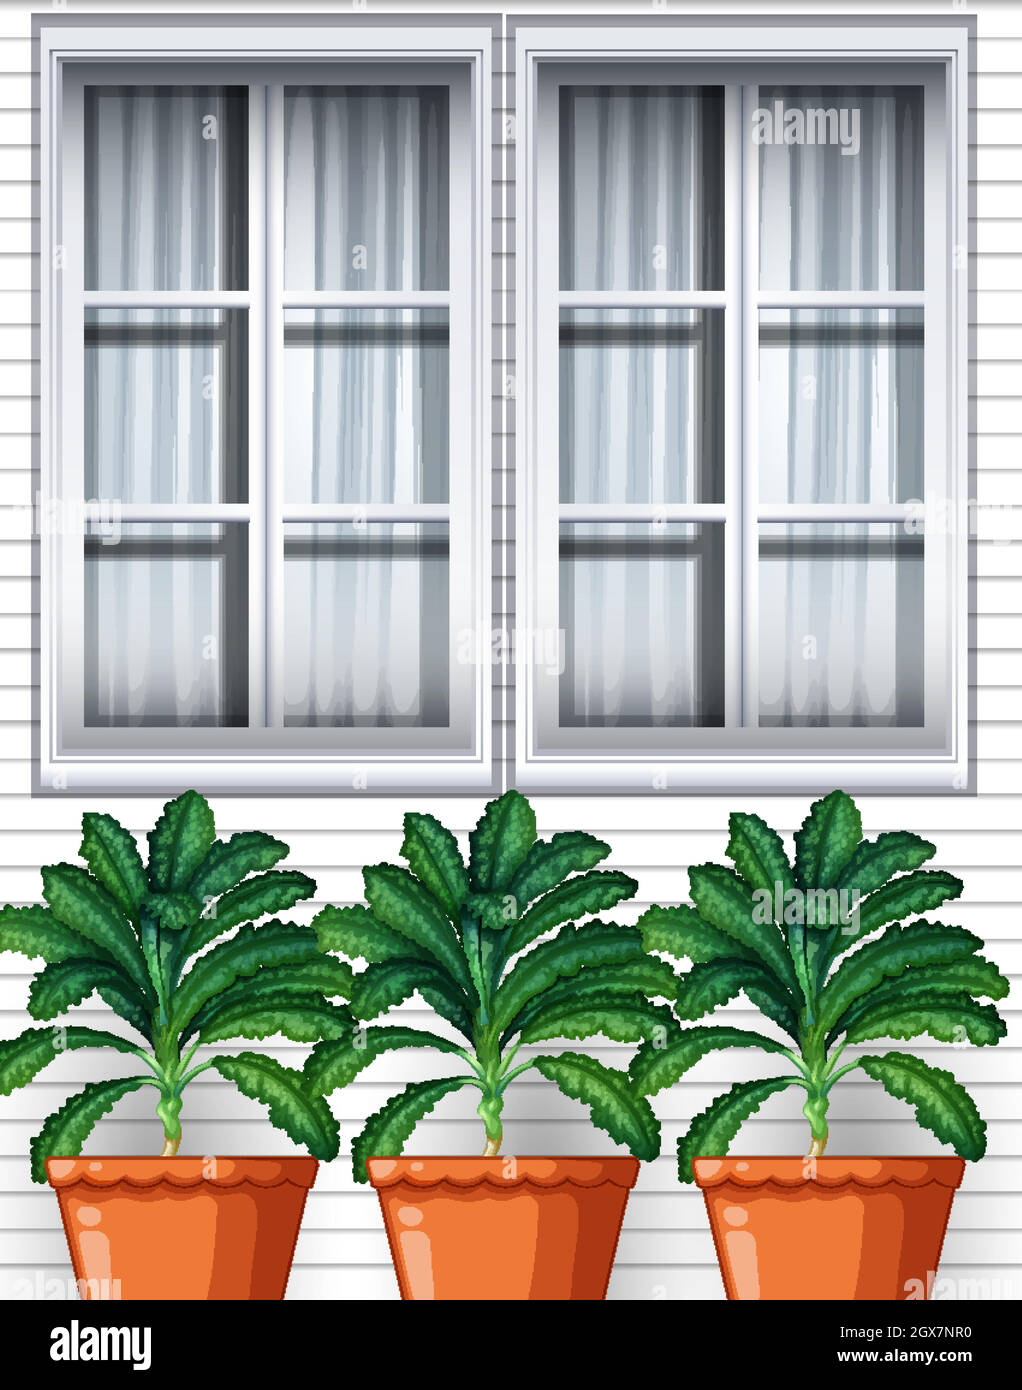 Drei Kulantropflanzen in Töpfen auf Fensterhintergrund Stock Vektor